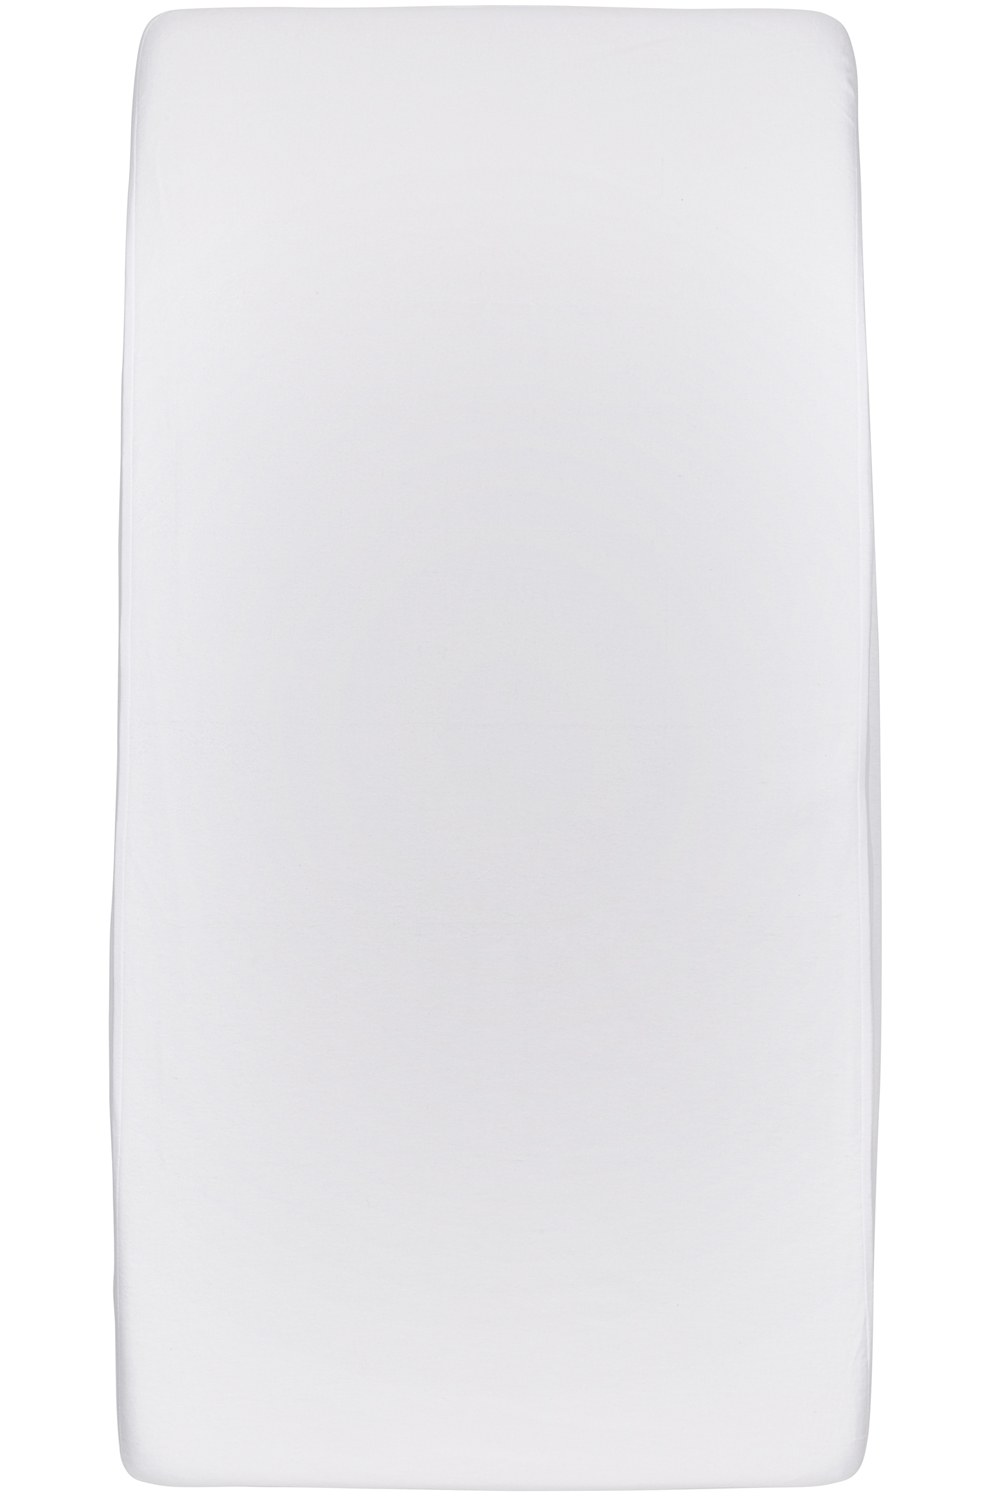 Waterdicht hoeslaken ledikant - white - 60x120cm